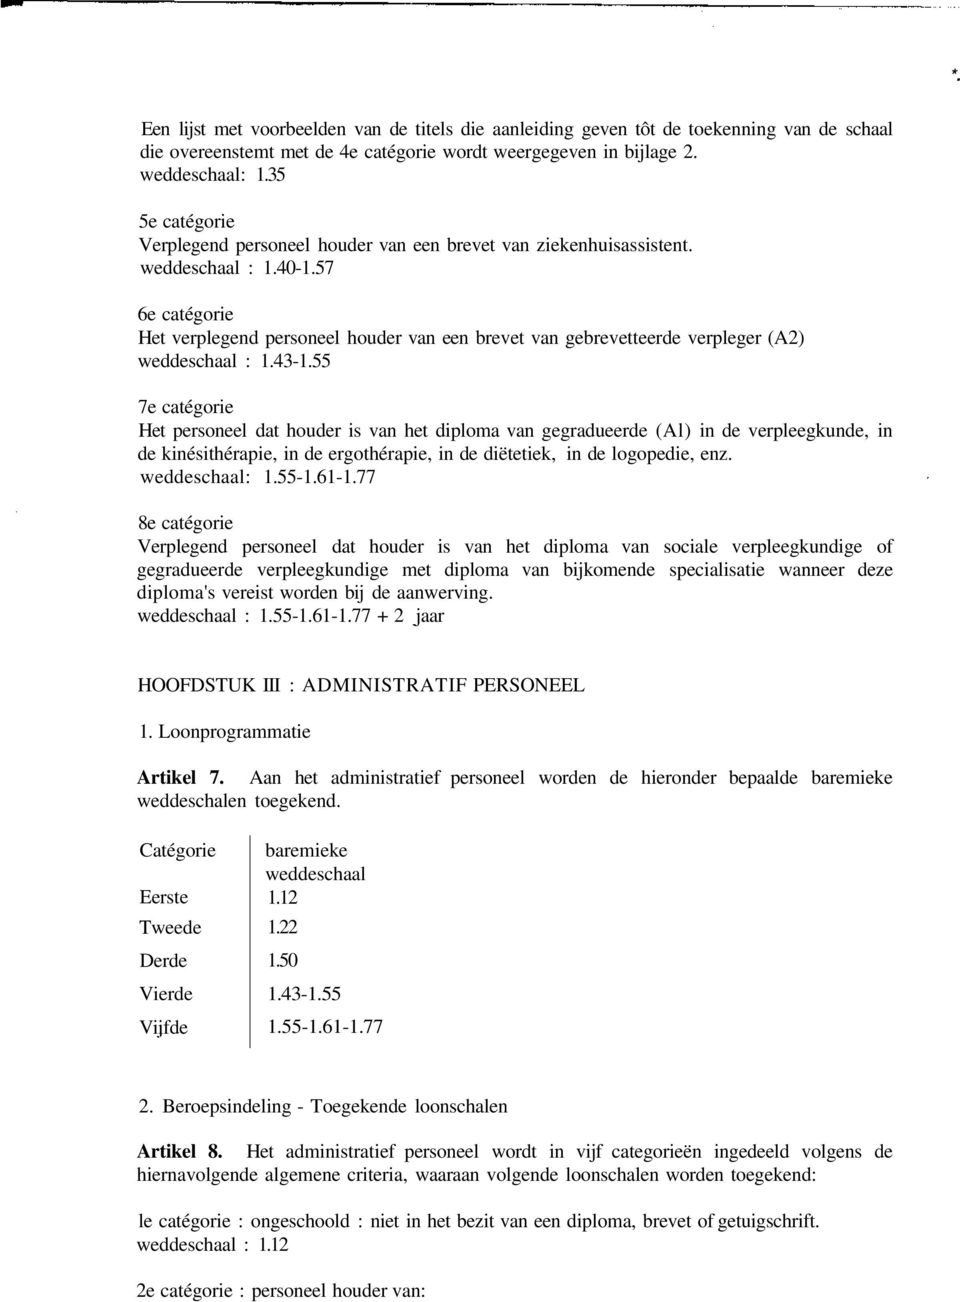 57 6e catégorie Het verplegend personeel houder van een brevet van gebrevetteerde verpleger (A2) weddeschaal : 1.43-1.